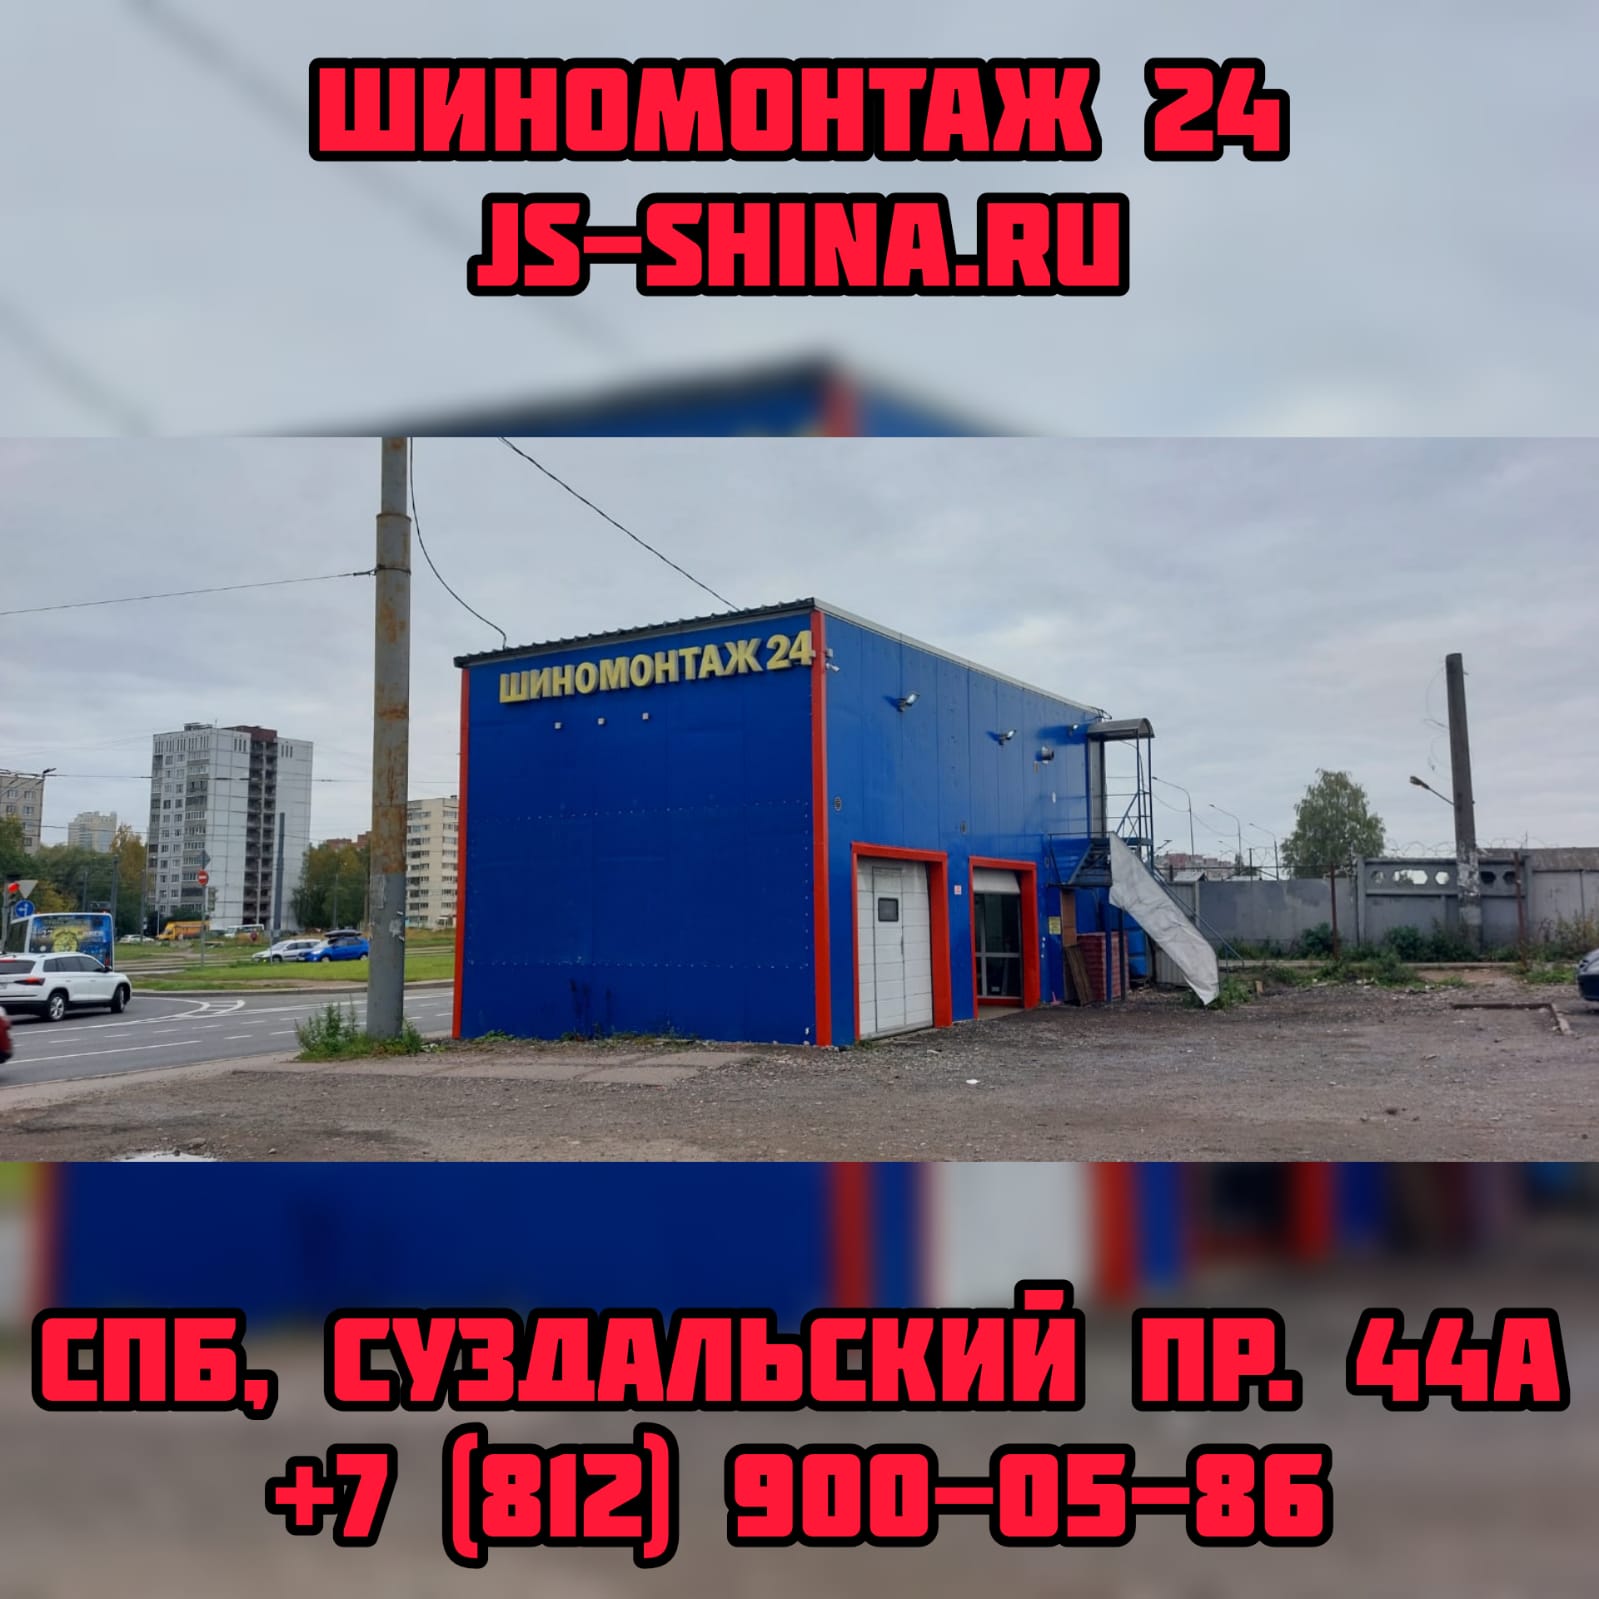 Шиномонтаж 24 часа в СПб, Суздальский пр. 44А ремонт дисков